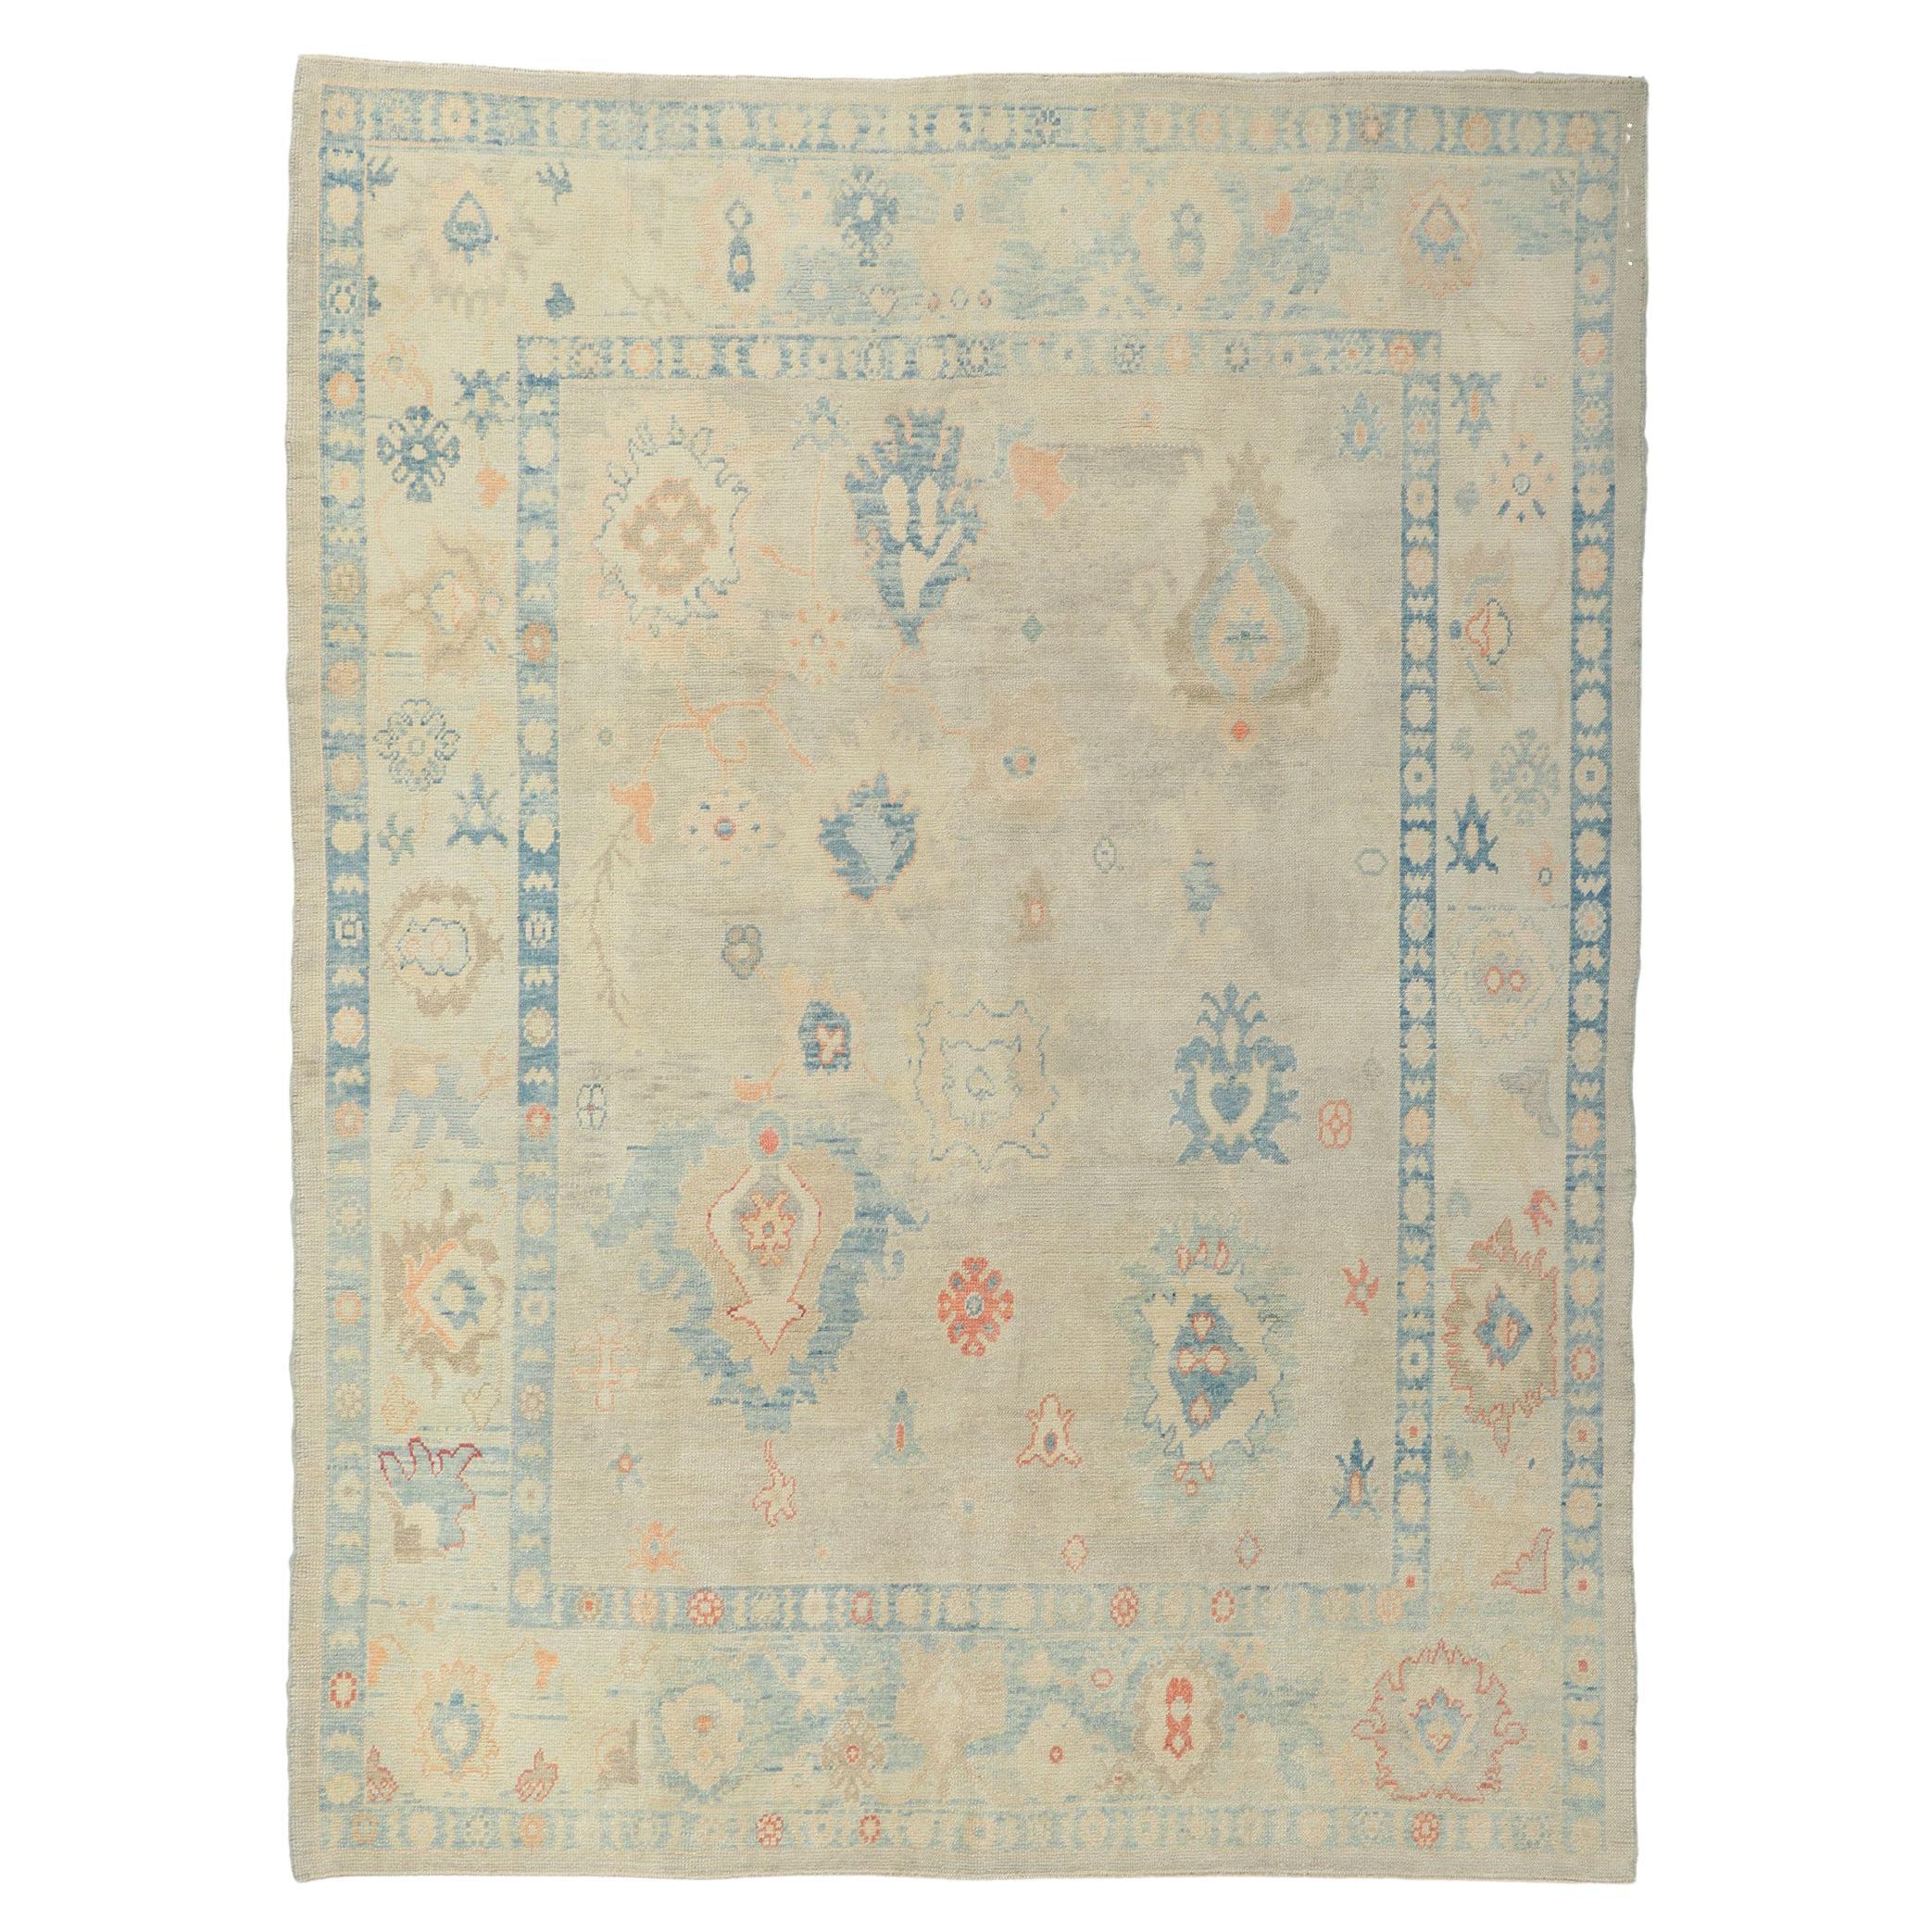 Nouveau tapis turc Oushak, le style gustavien suédois rencontre le style moderne